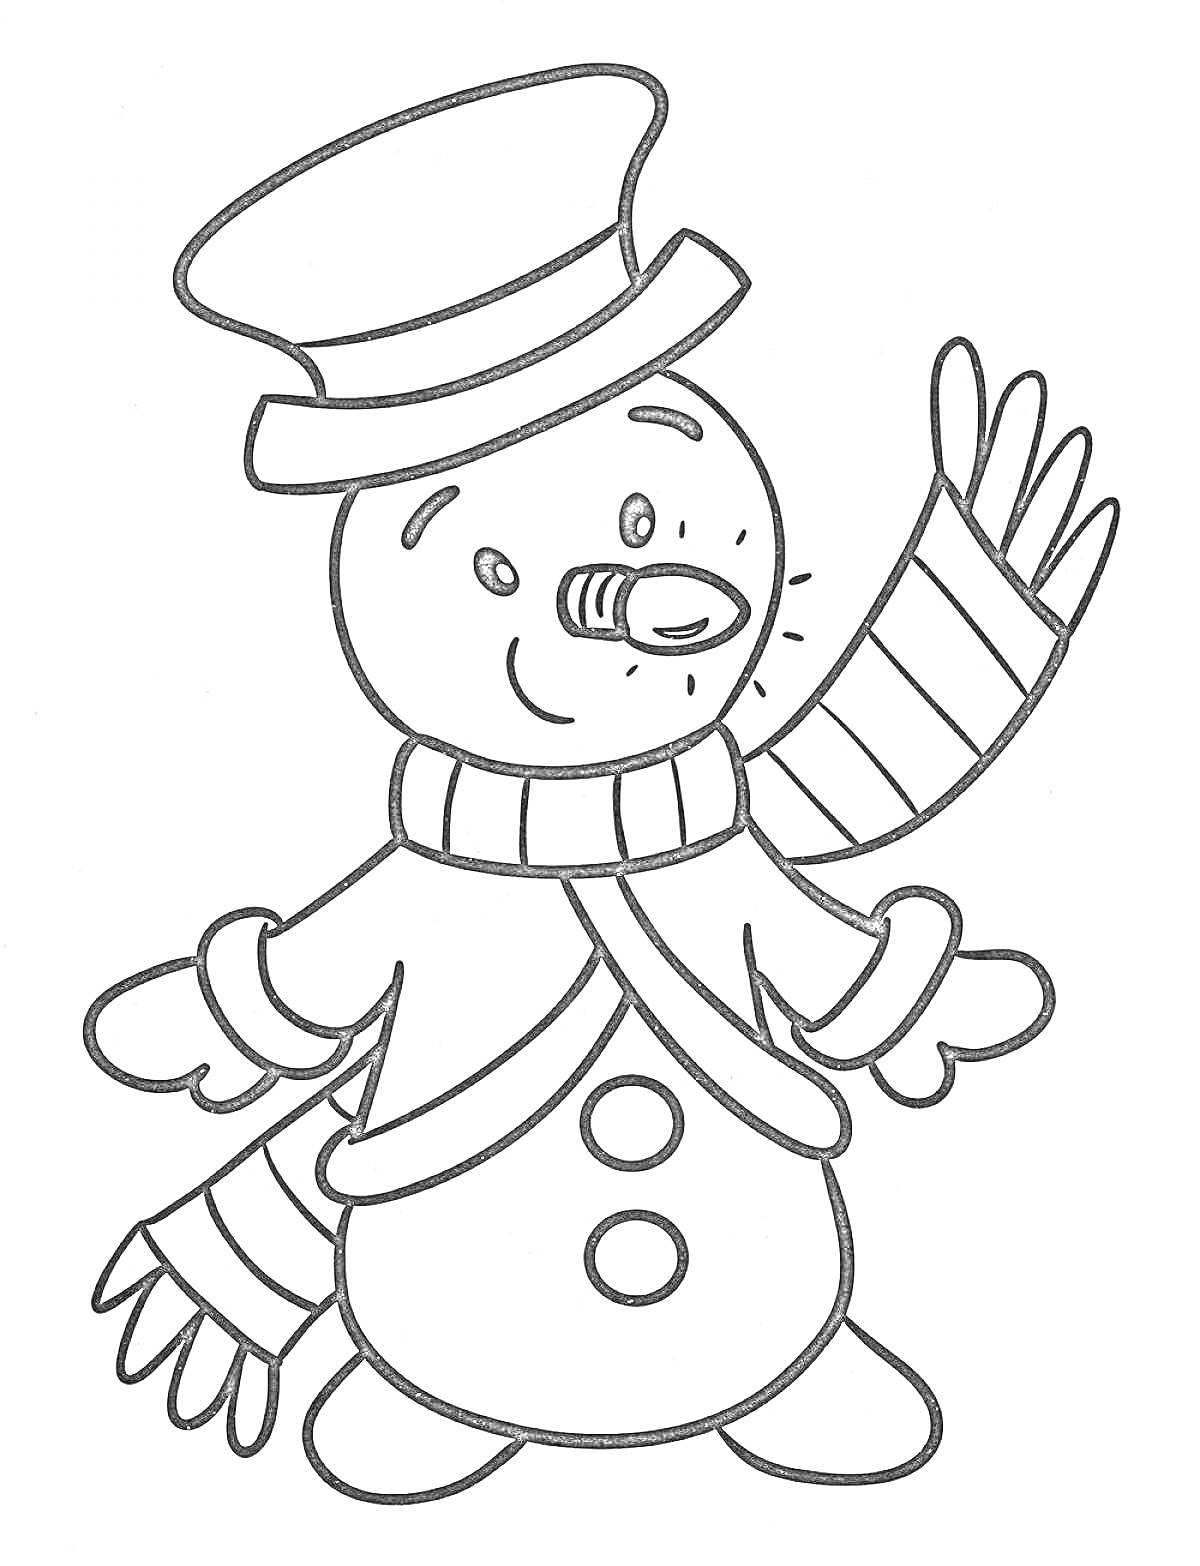 Снеговик с шляпой, шарфом и морковкой вместо носа